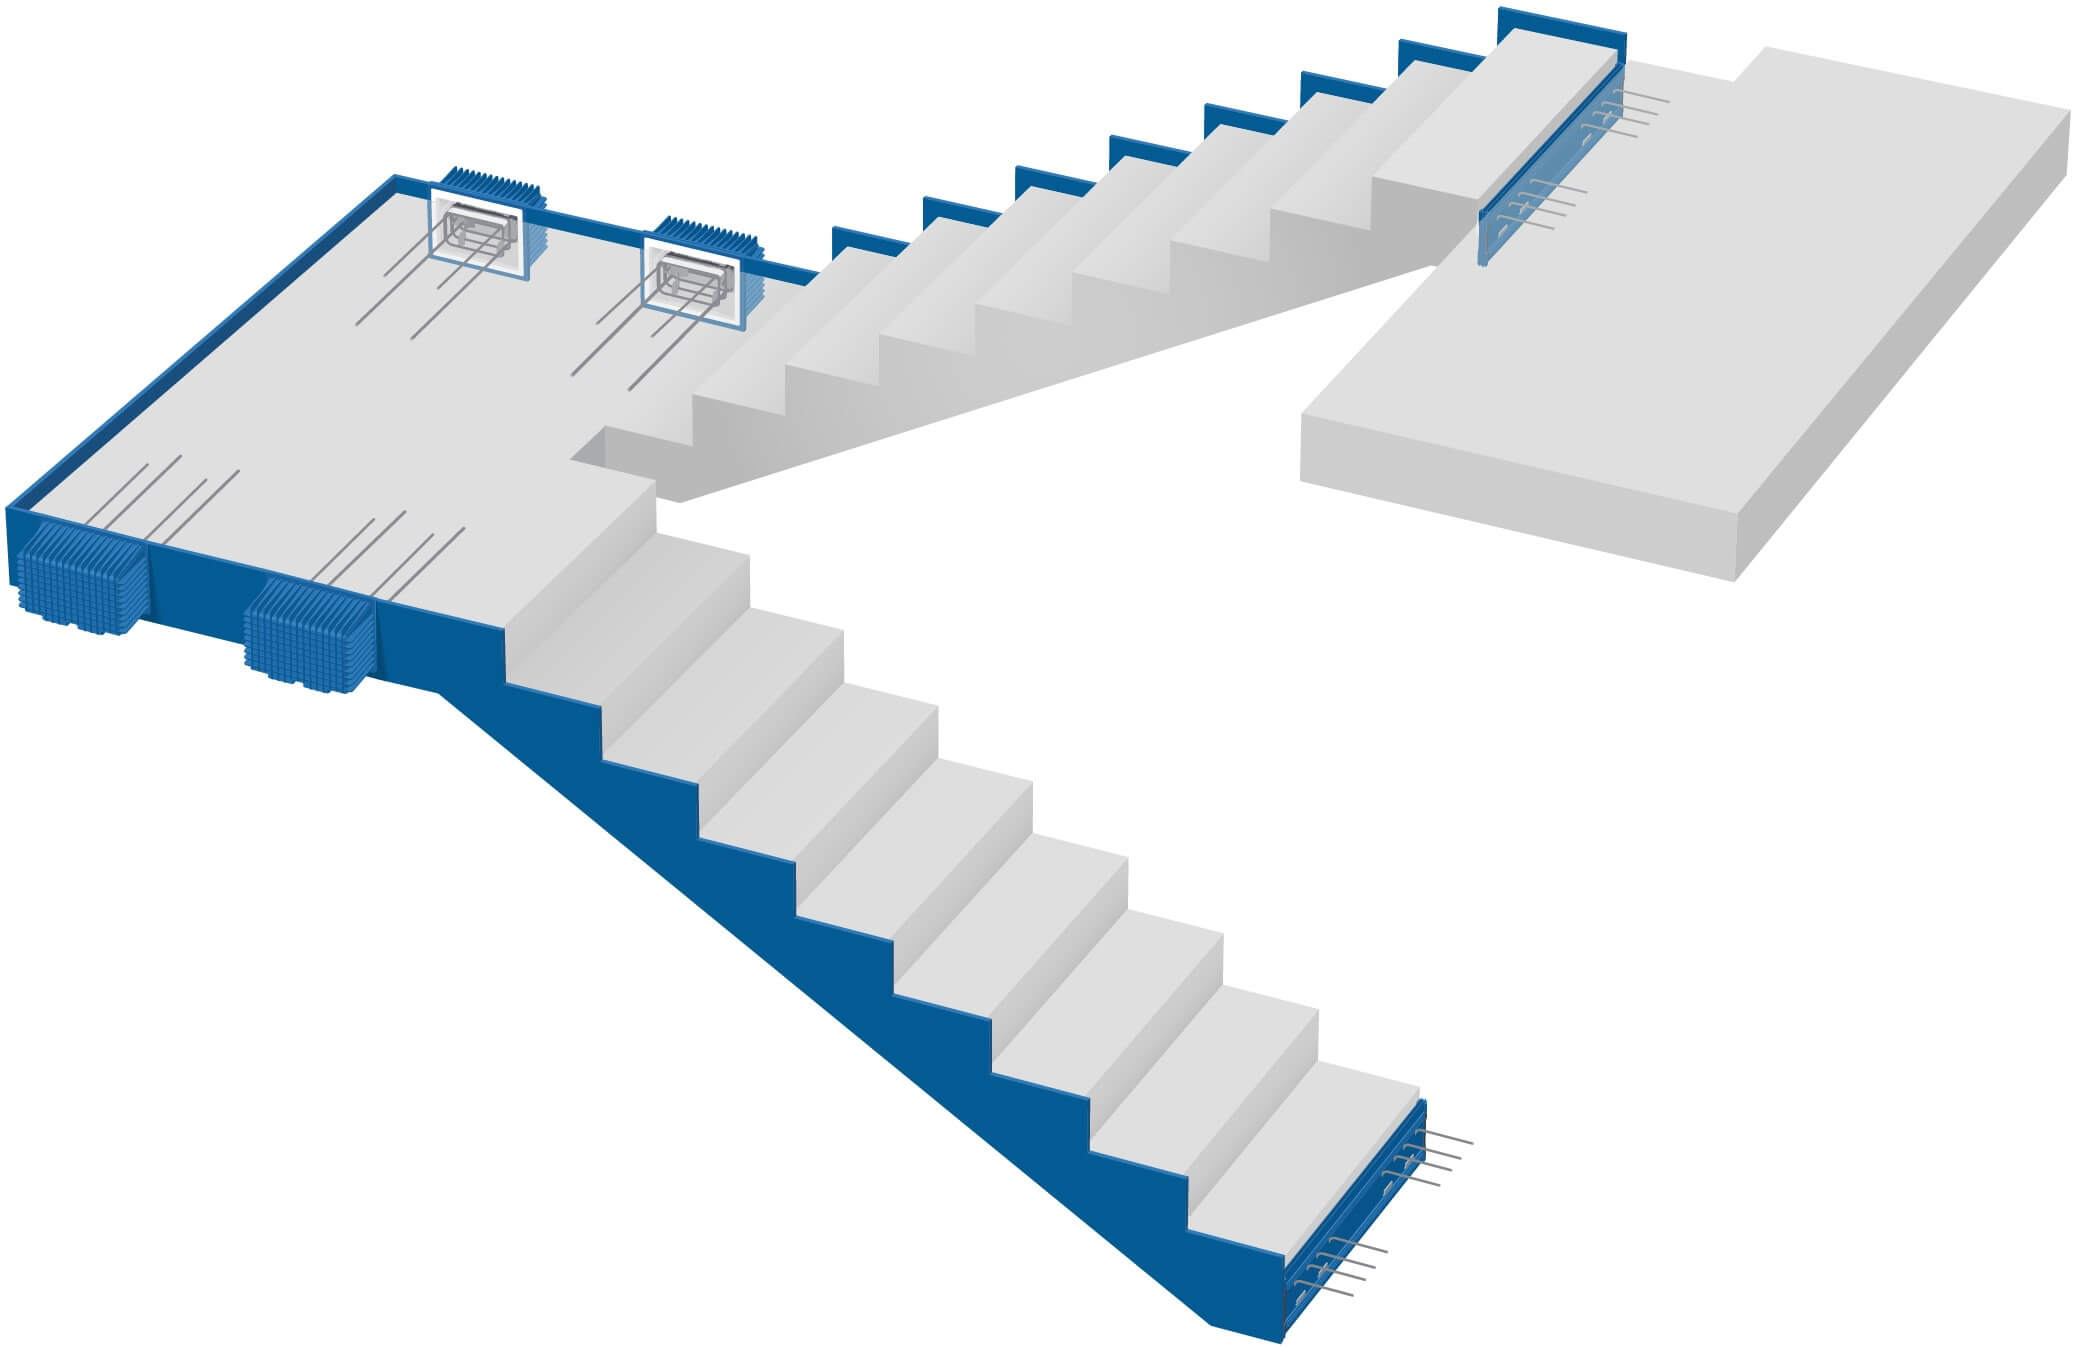 Tiesūs laiptai, izoliuoti laiptai ir aikštelė– optimizuoti betonavimui statybų aikštelėje